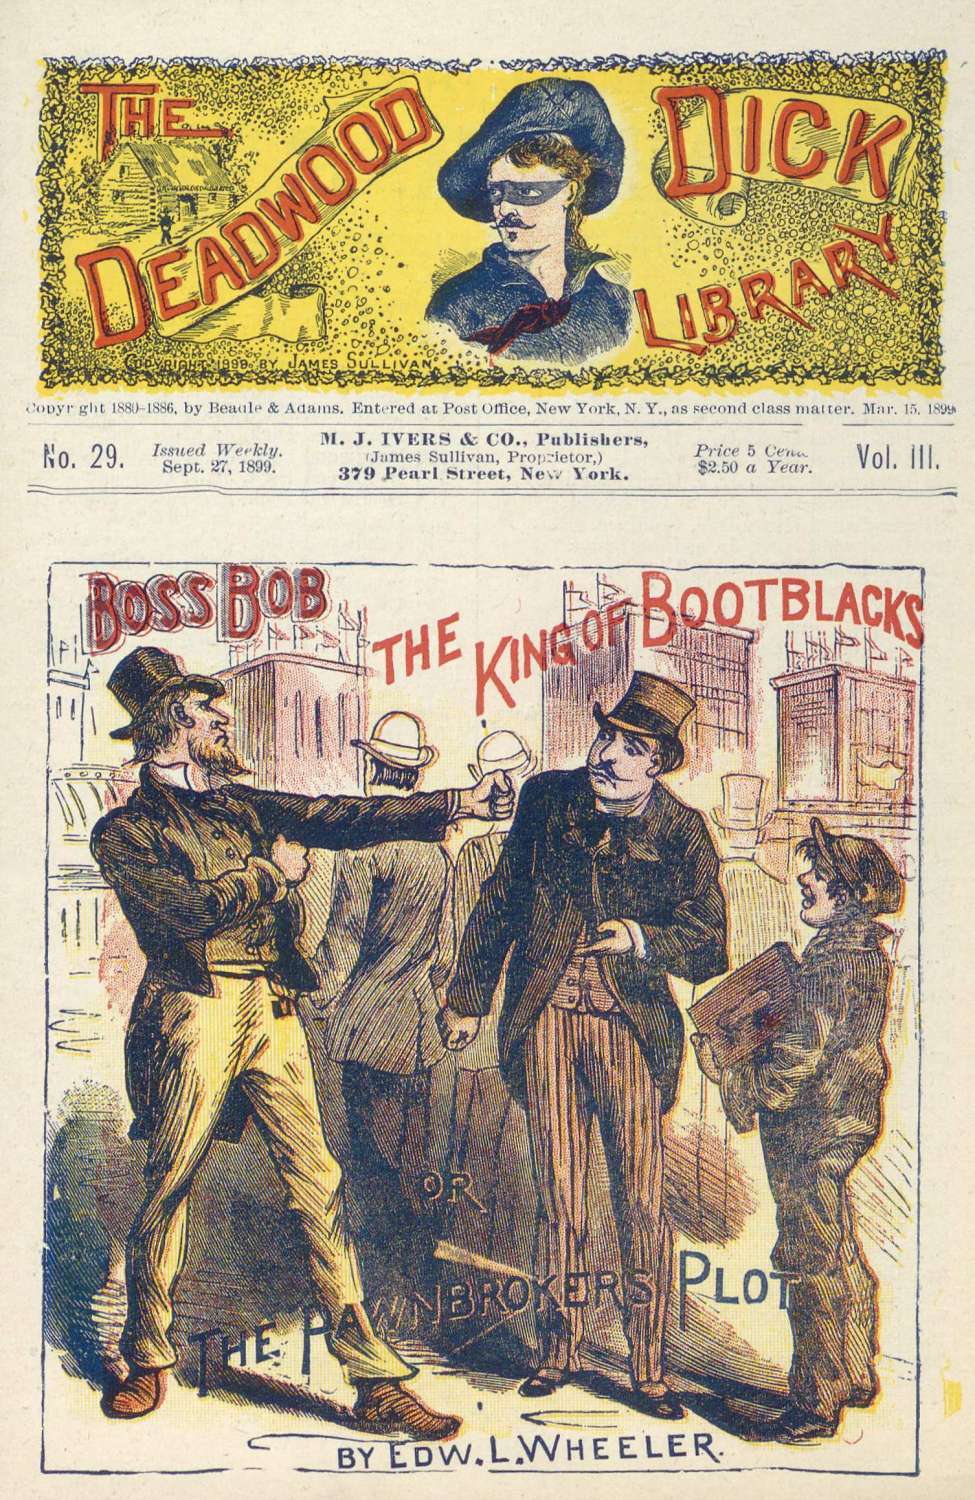 Book Cover For Deadwood Dick Library v2 29 - Boss Bob, the King of Bootblacks